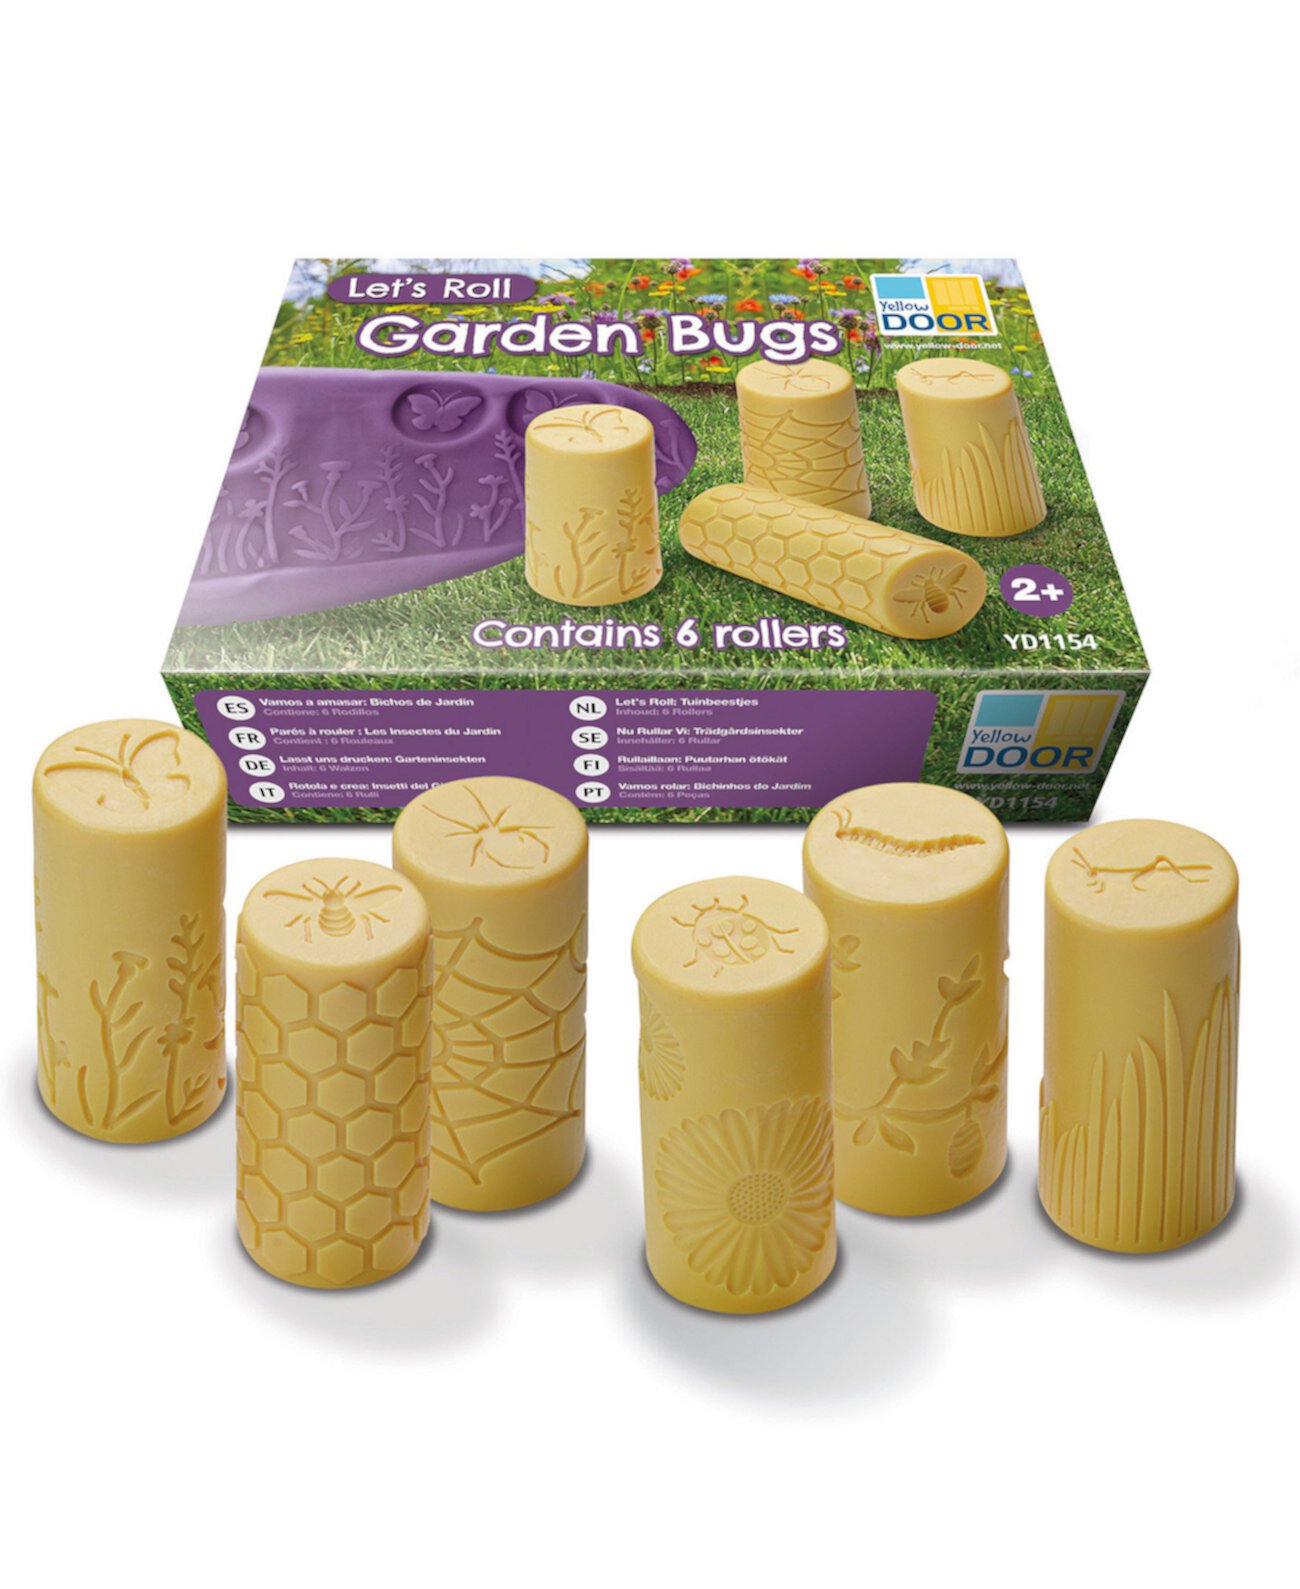 Ролики Let's Roll Garden Bugs, набор из 6 шт. Yellow Door